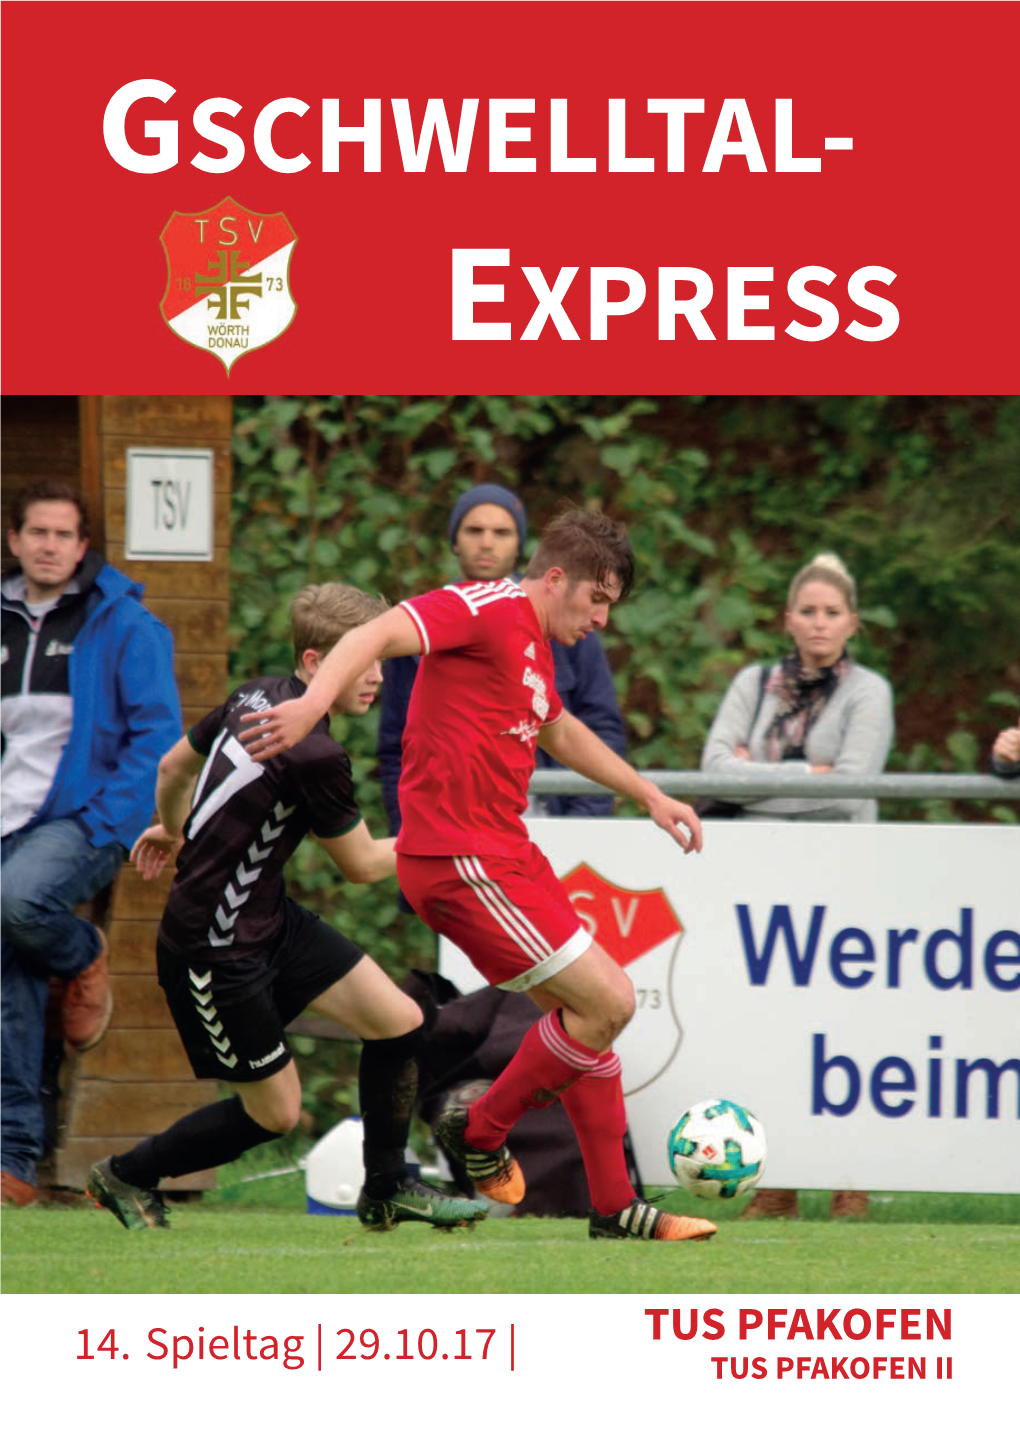 Gschwelltal- Express Stadionzeitung Des Tsv Wörth | Kreisklasse 1 2017/18 | Ausgabe 01